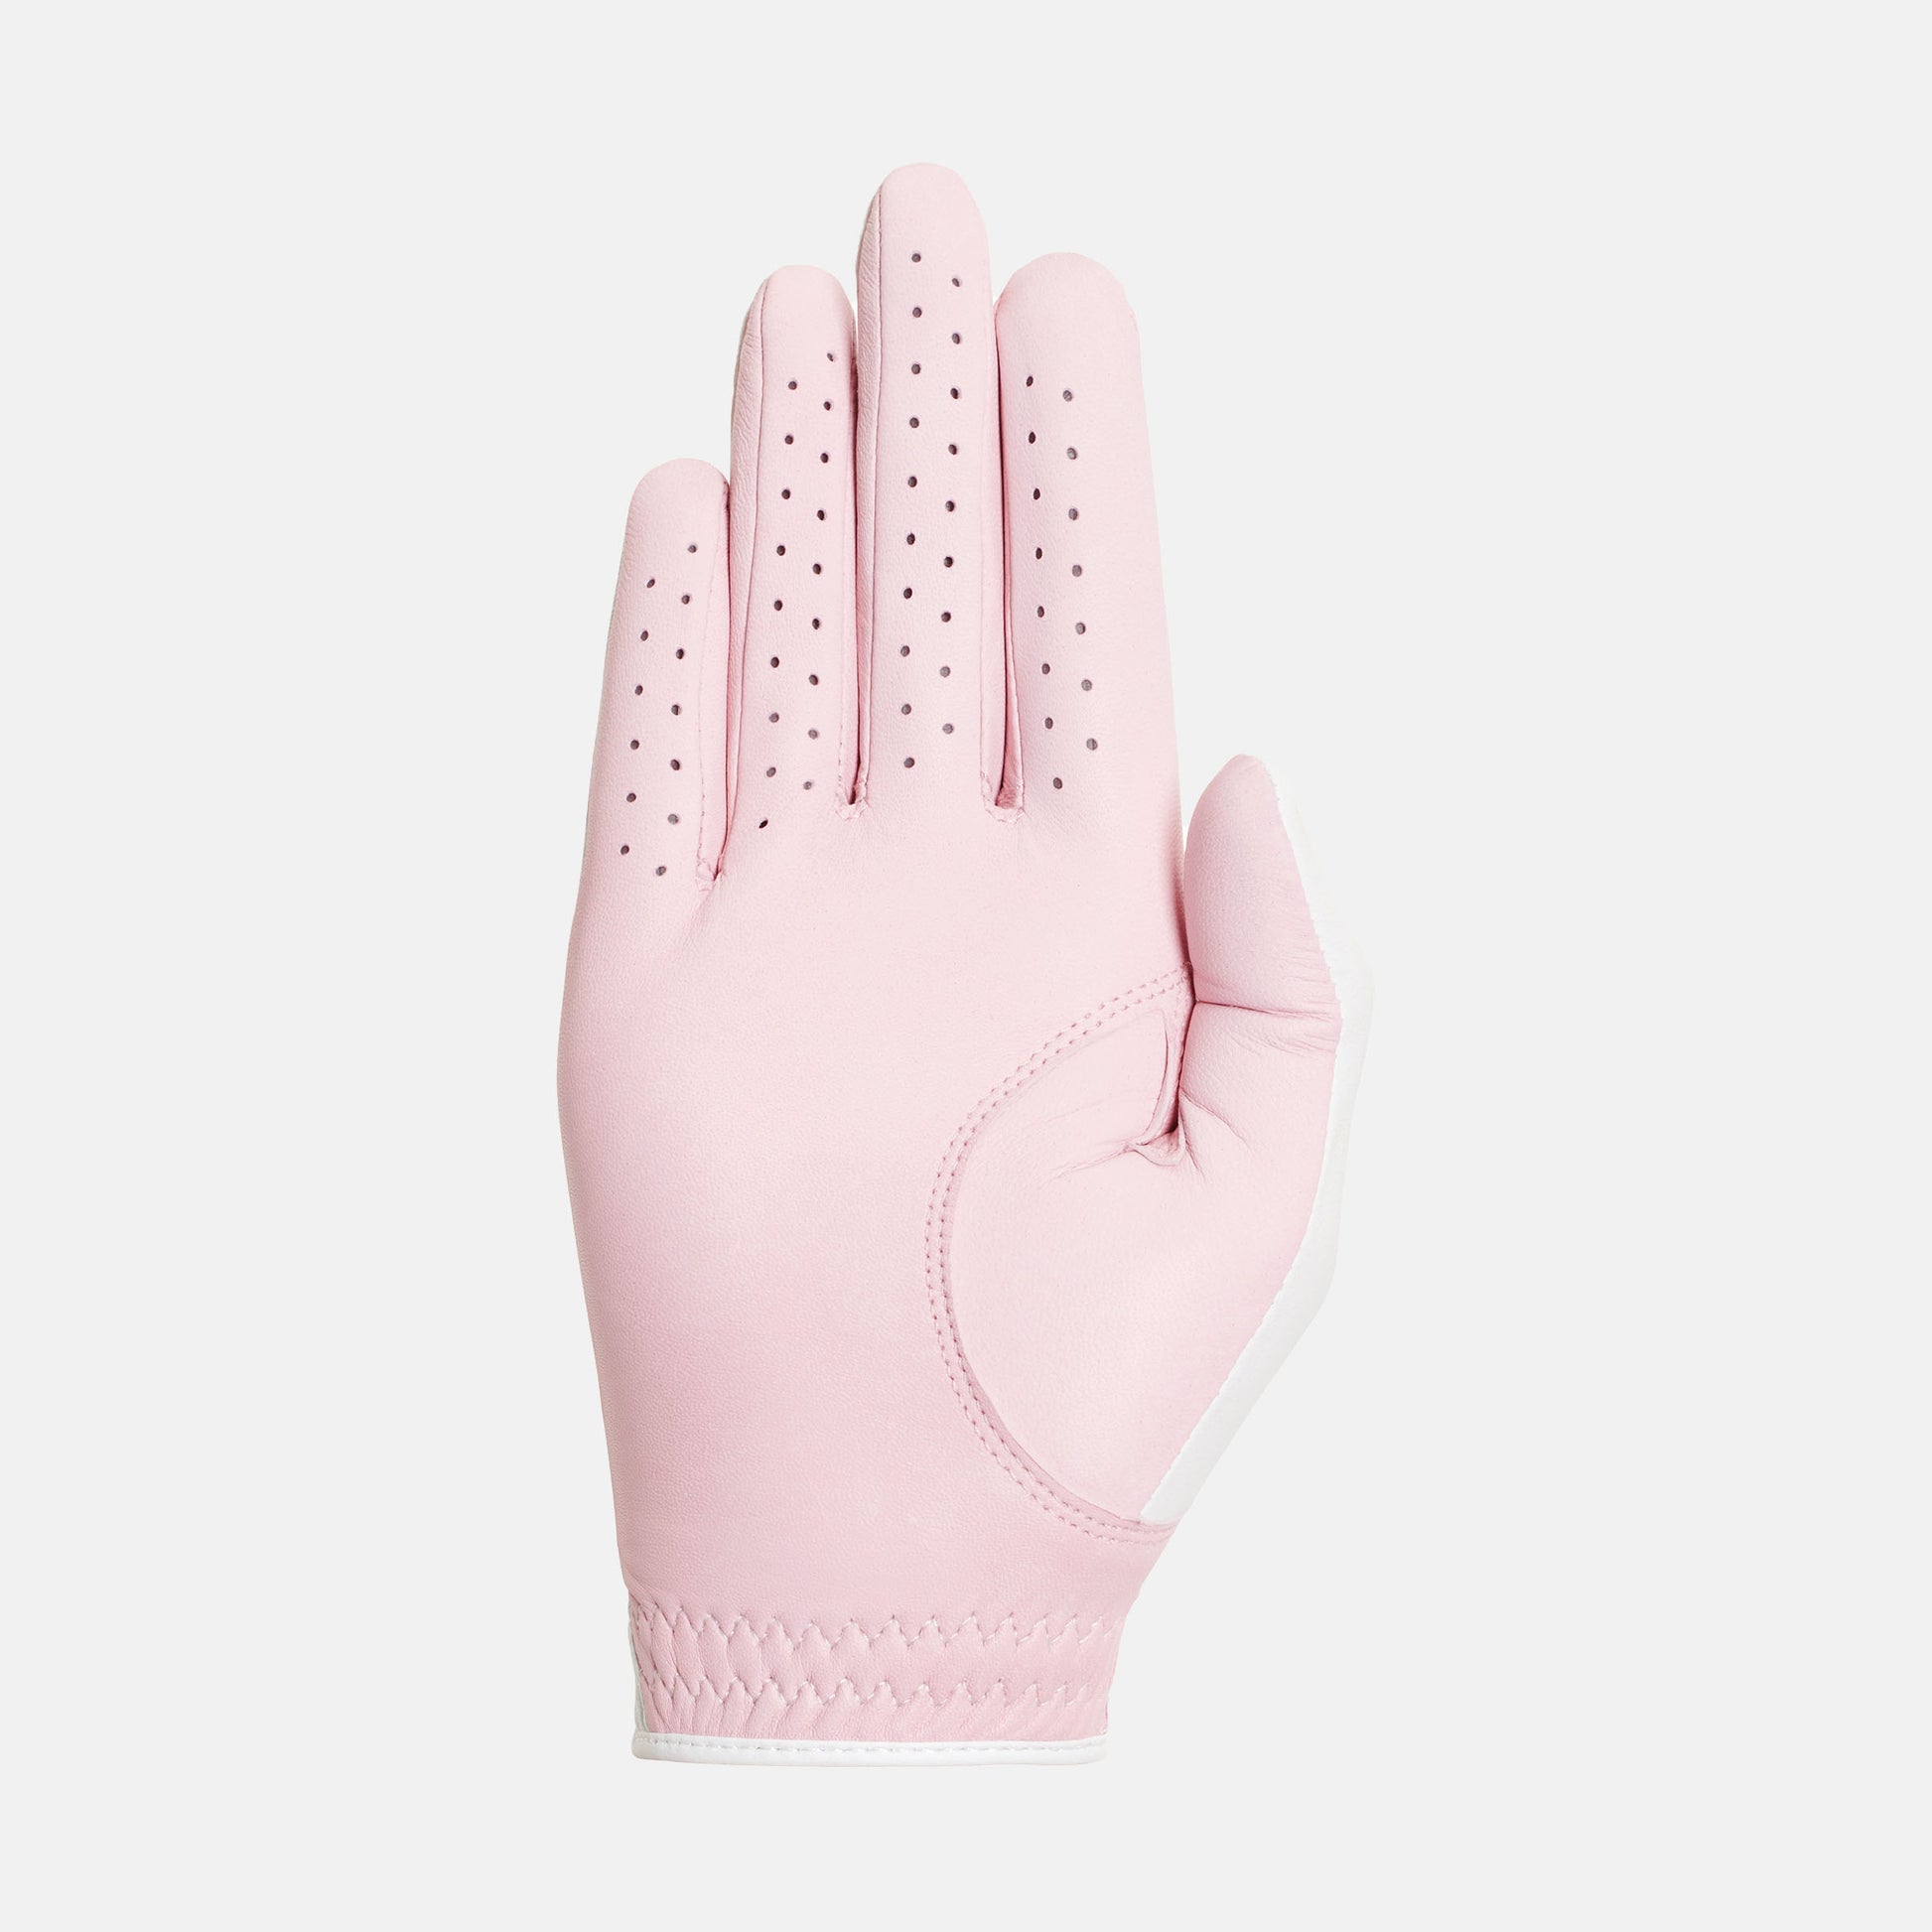 Golf glove duca del cosma Yasmine - Pink/White (Right)